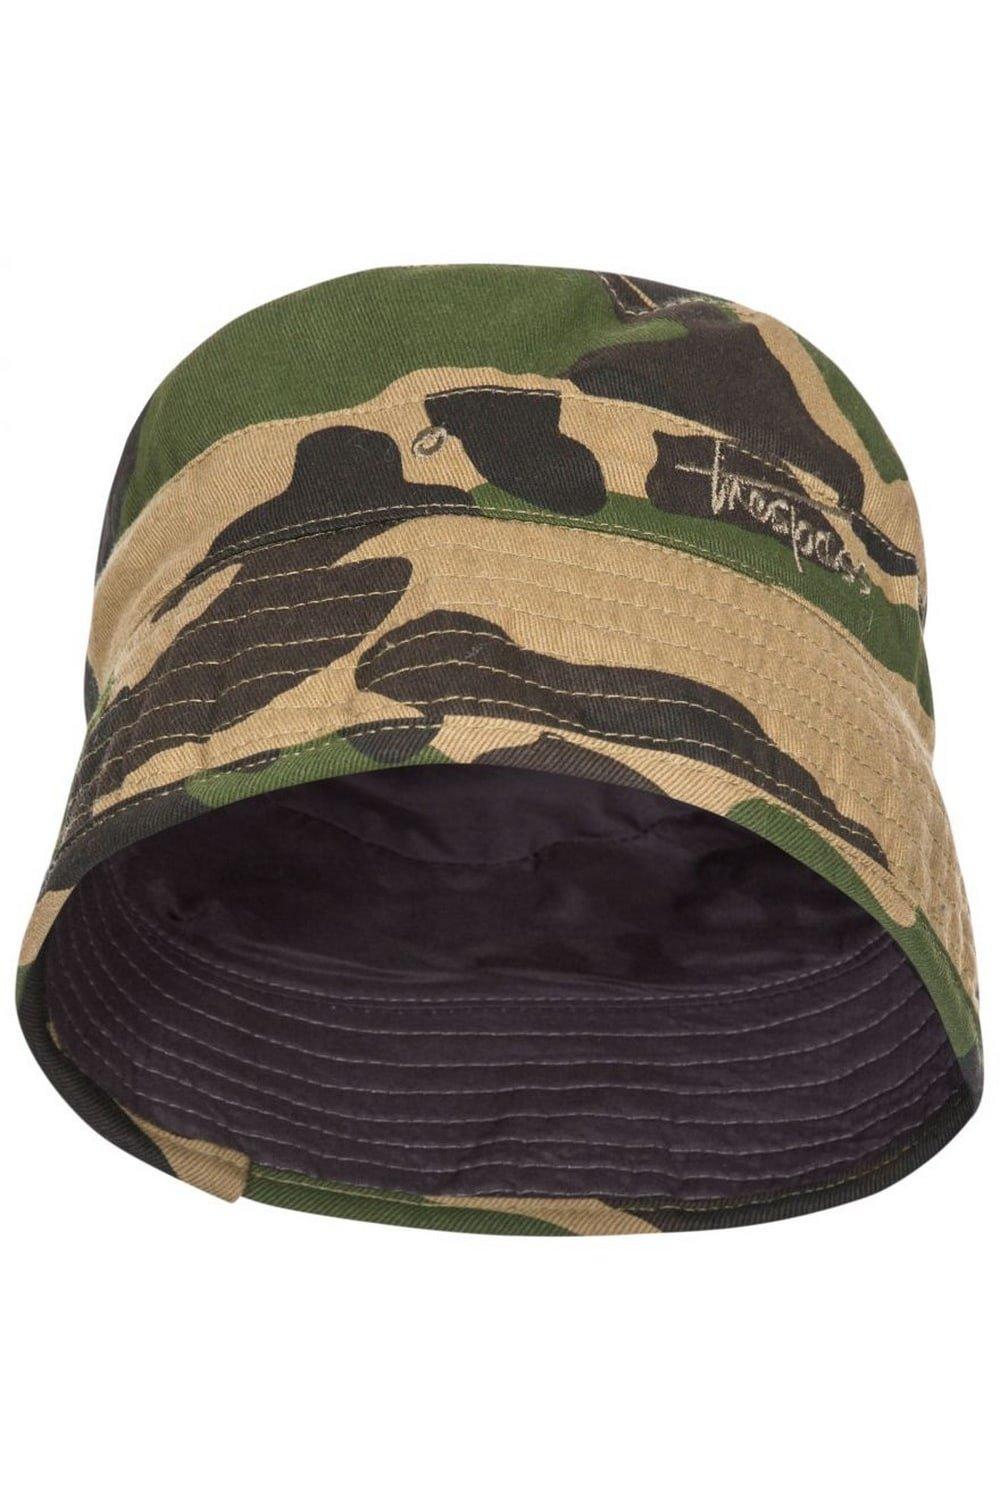 Летняя панама Zebedee Trespass, зеленый летняя вязаная шляпа рыбака с вырезами шляпа от солнца и солнца универсальная летняя шляпа от солнца уличные панамы